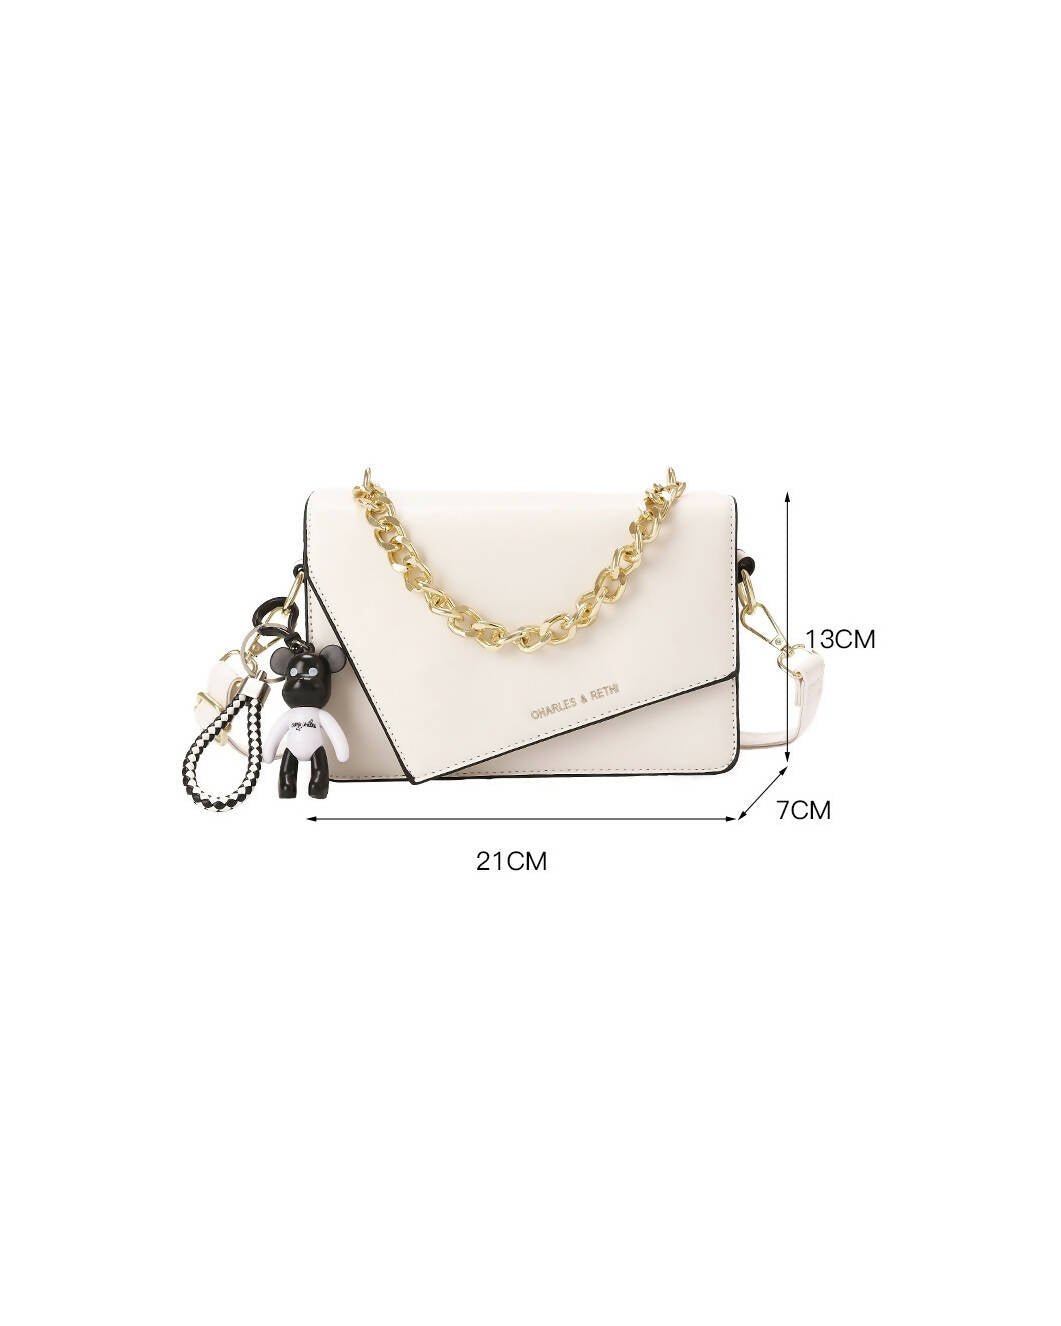 Slaks World Fashion Medium Size Casual Messenger Bag - White - Shopzetu